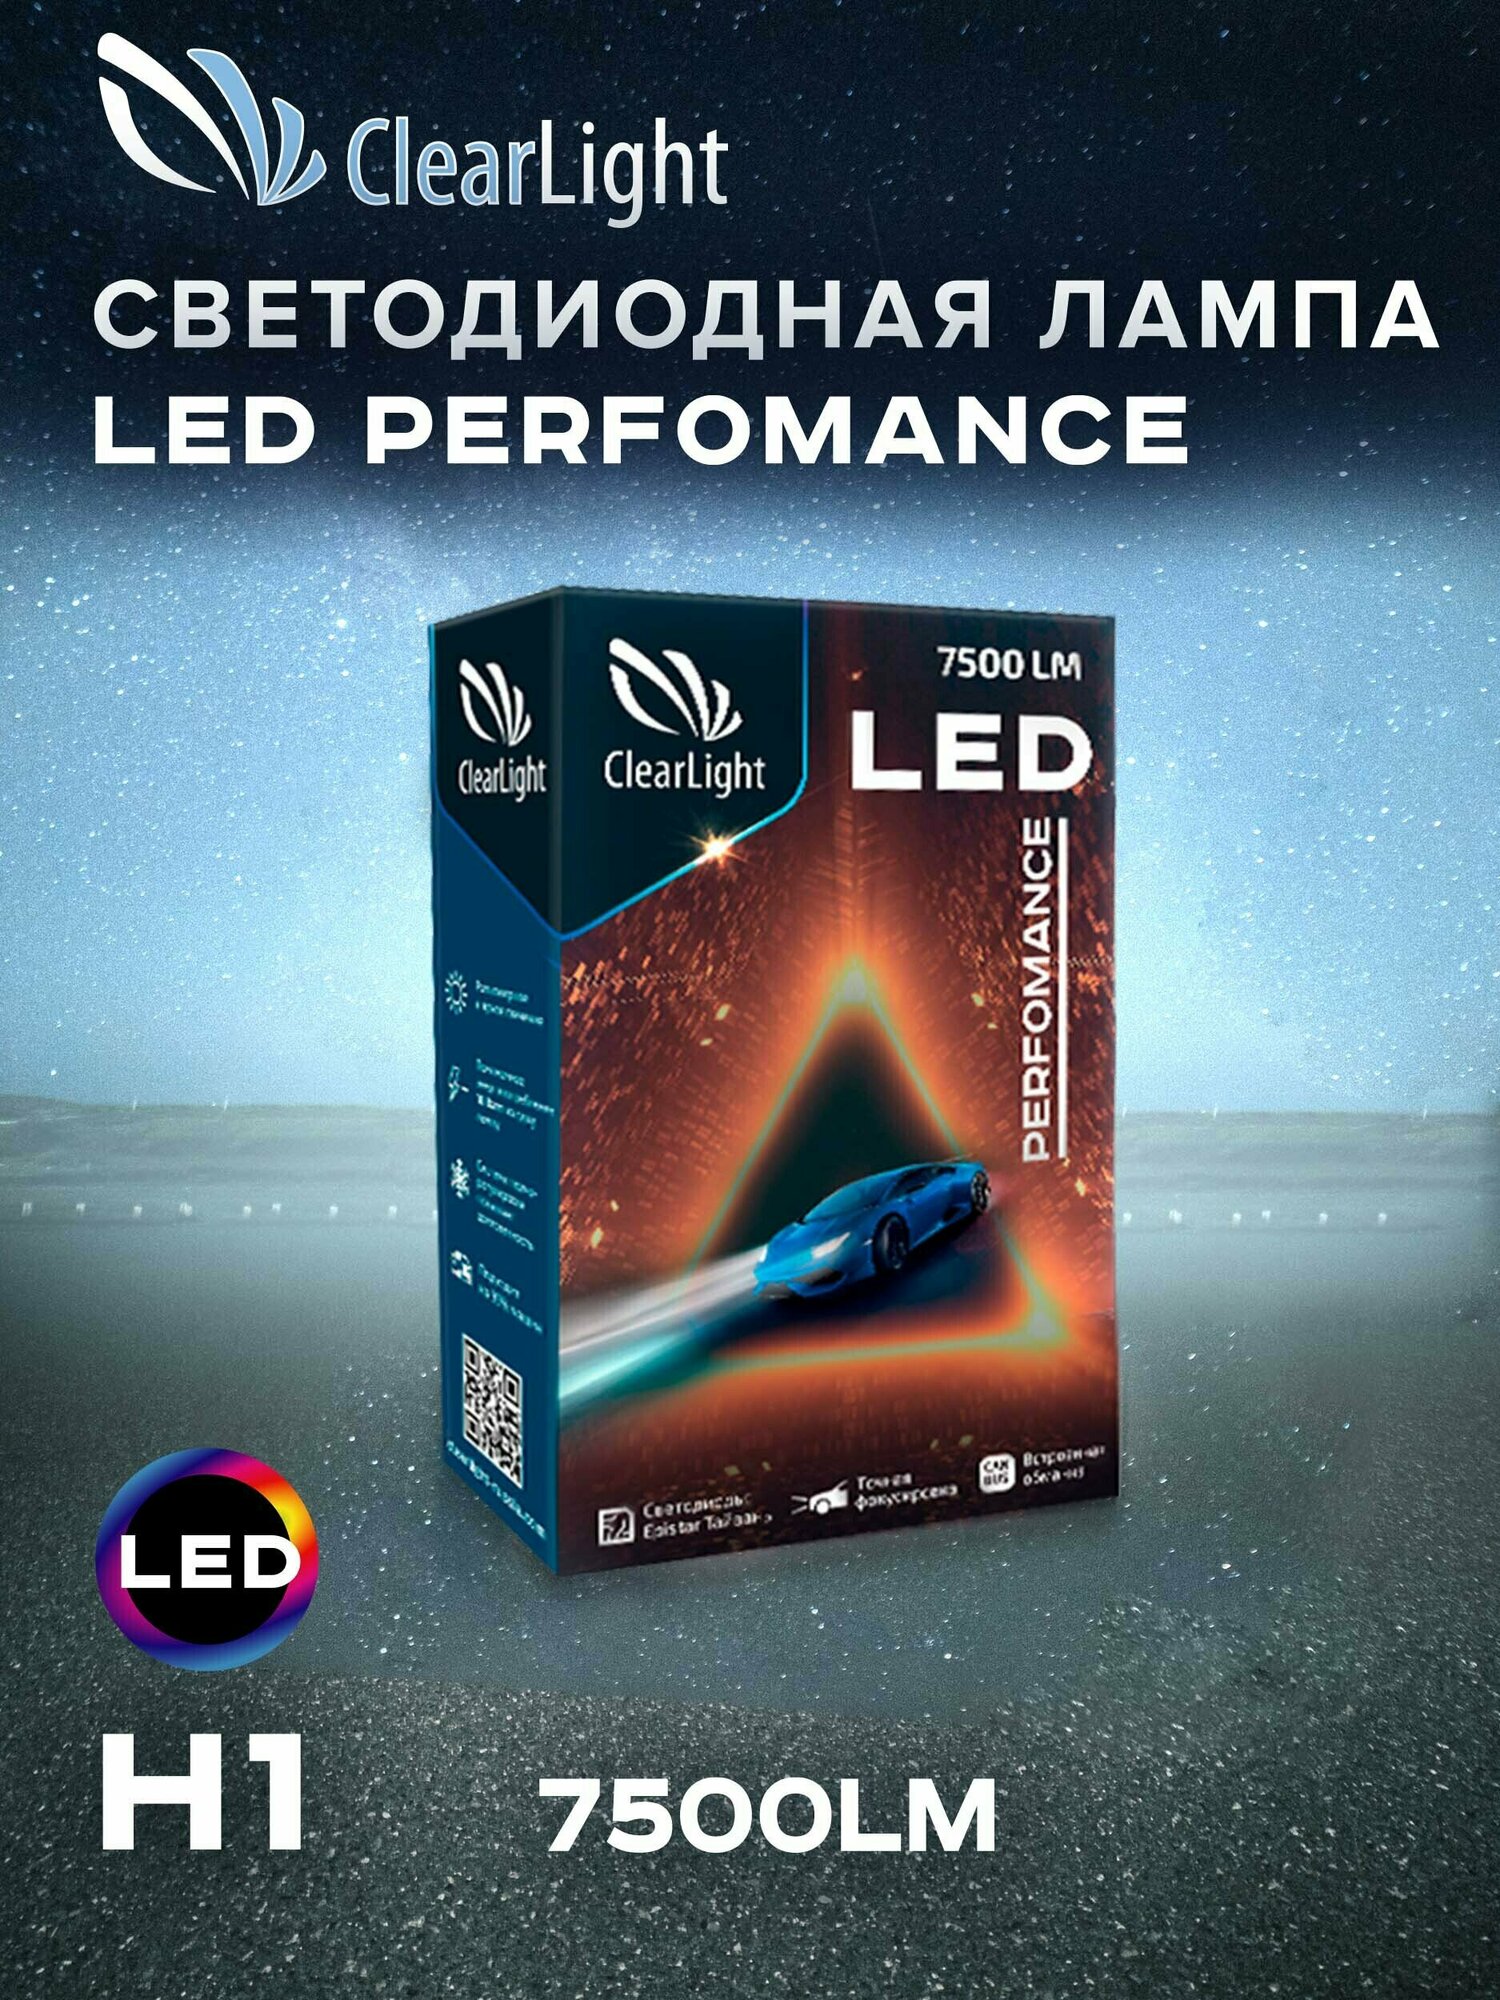 Cветодиодные лампы для автомобилей / для авто/ H1 / LED Clearlight Performance / Canbus / 6000K / 7500lm / 18W / комплект 2шт